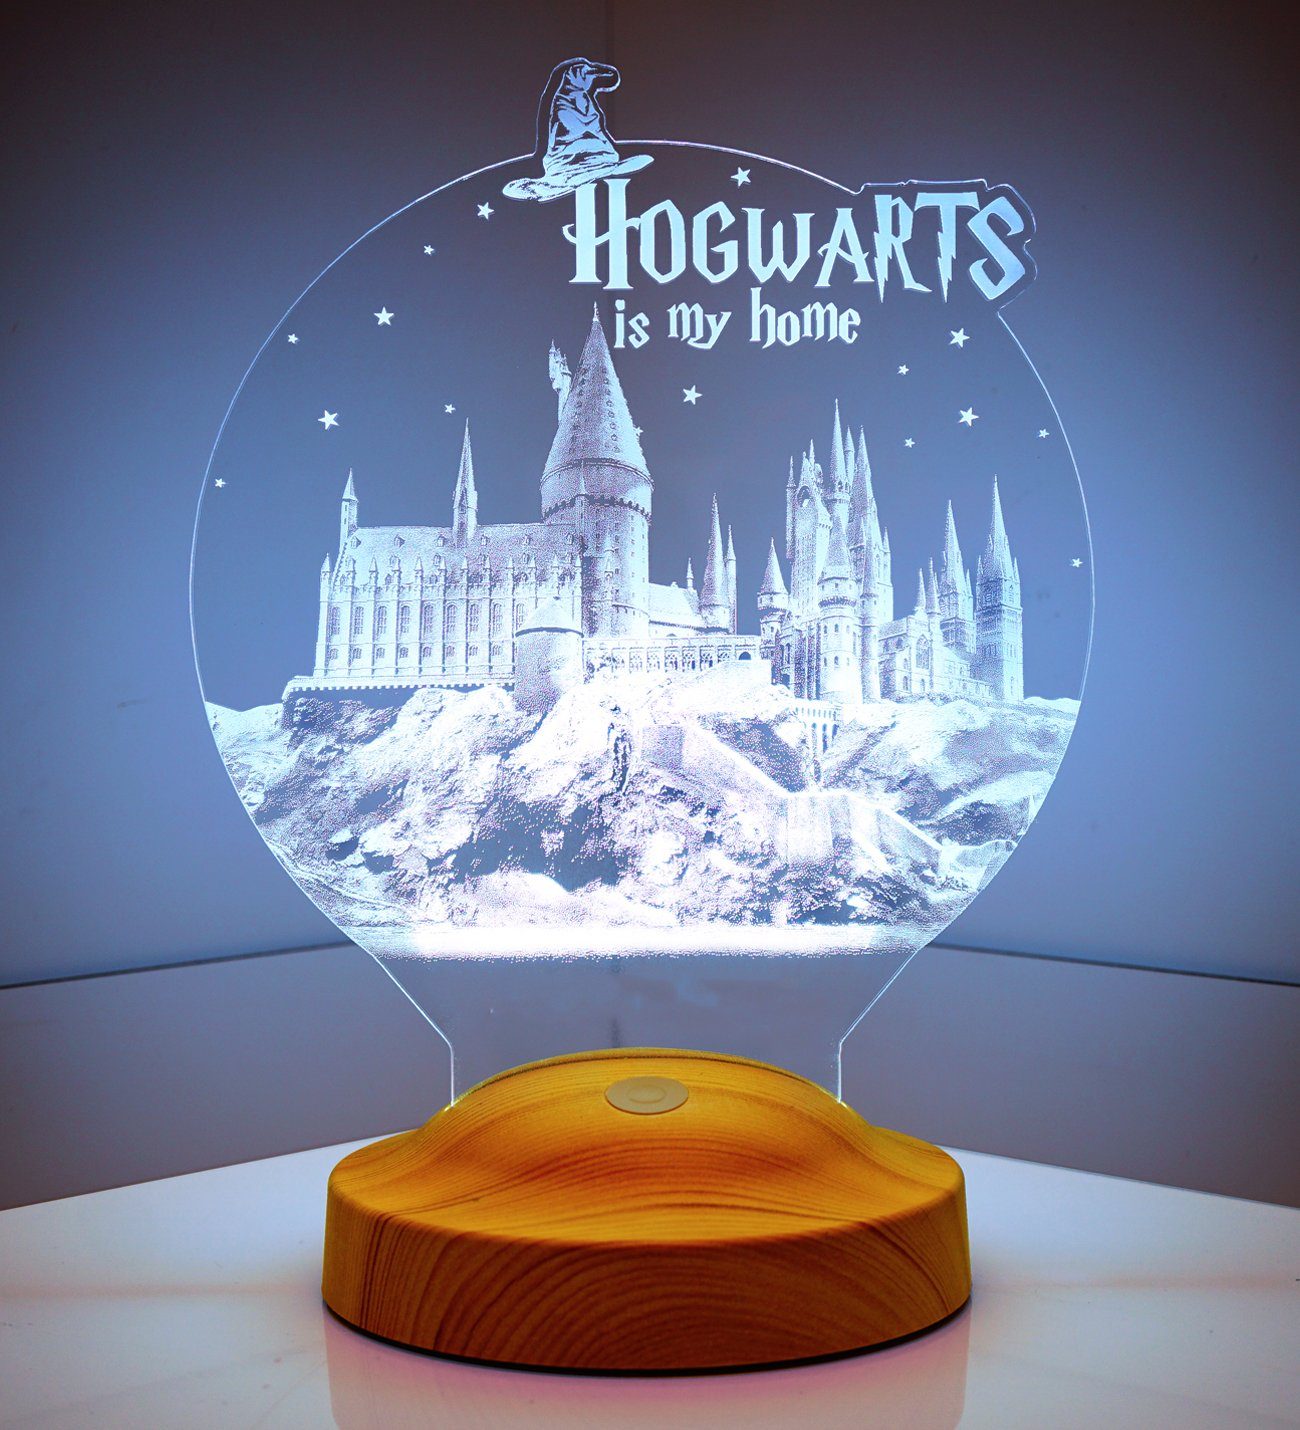 Geschenkelampe LED Nachttischlampe Hogwarts Weihnachtsgeschenk 3D Potter Jungen Harry Mädchen, integriert, für Farben Nachtlicht Geschenke fest für 7 Freunde, Leuchte Kinder